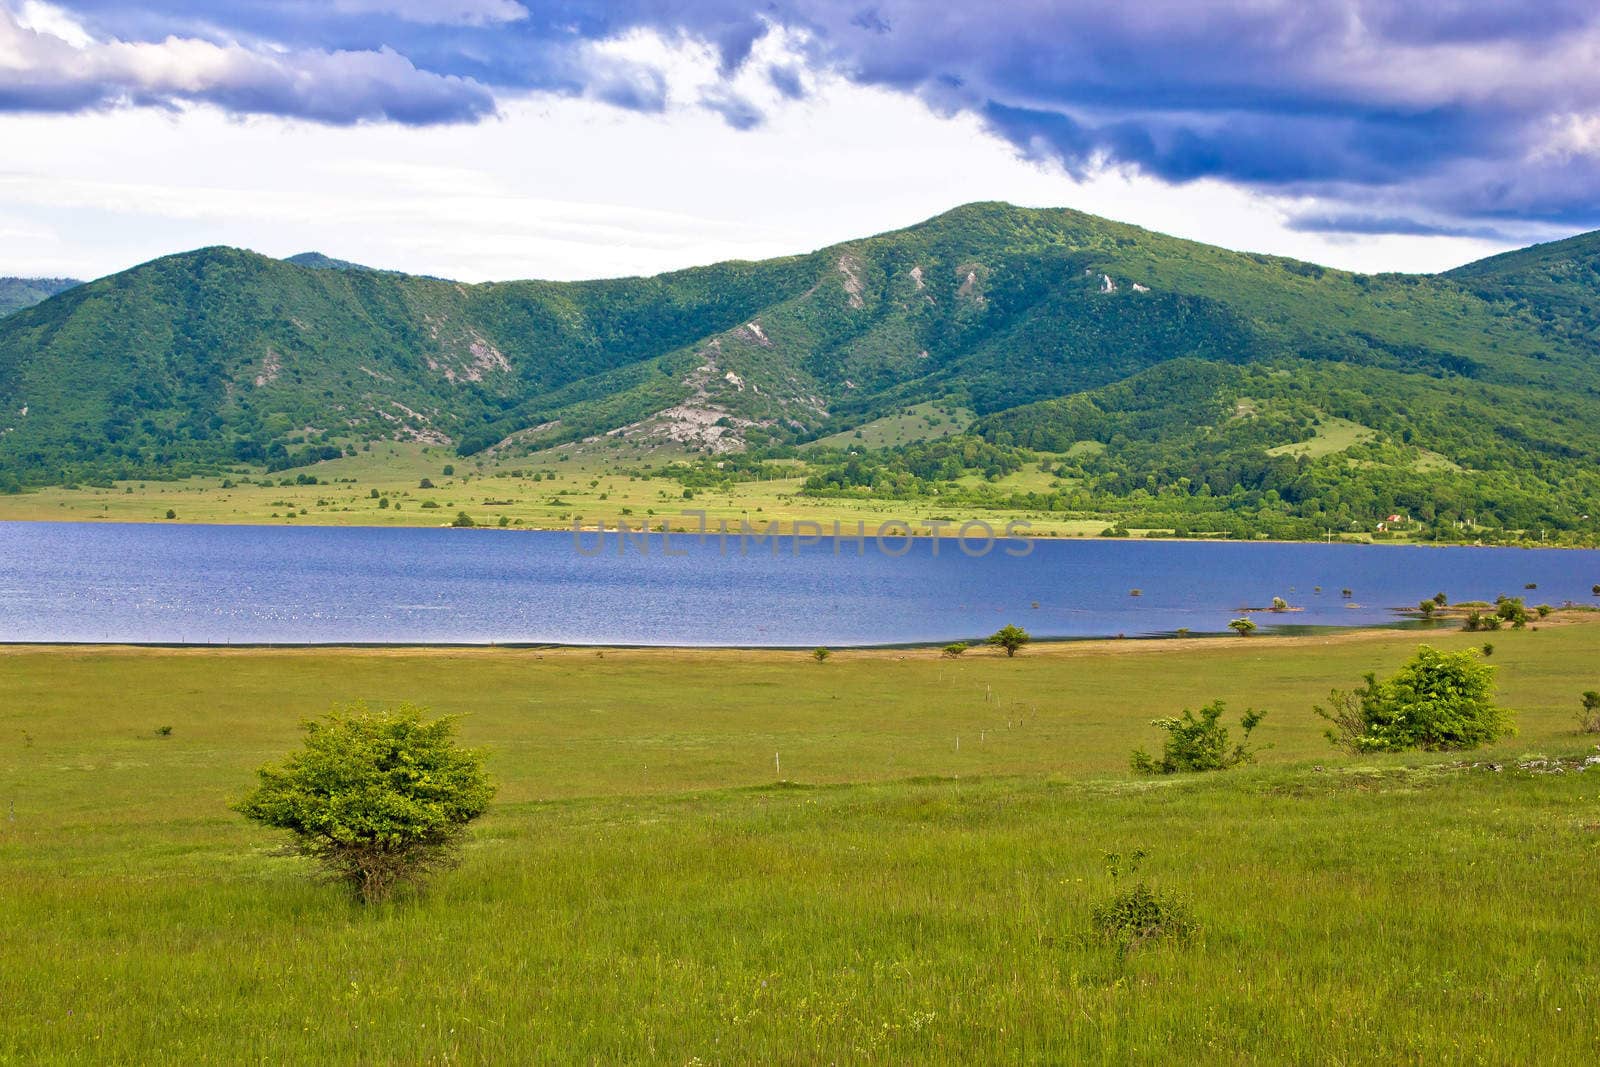 Lika region mountain and lake landscape, Croatia